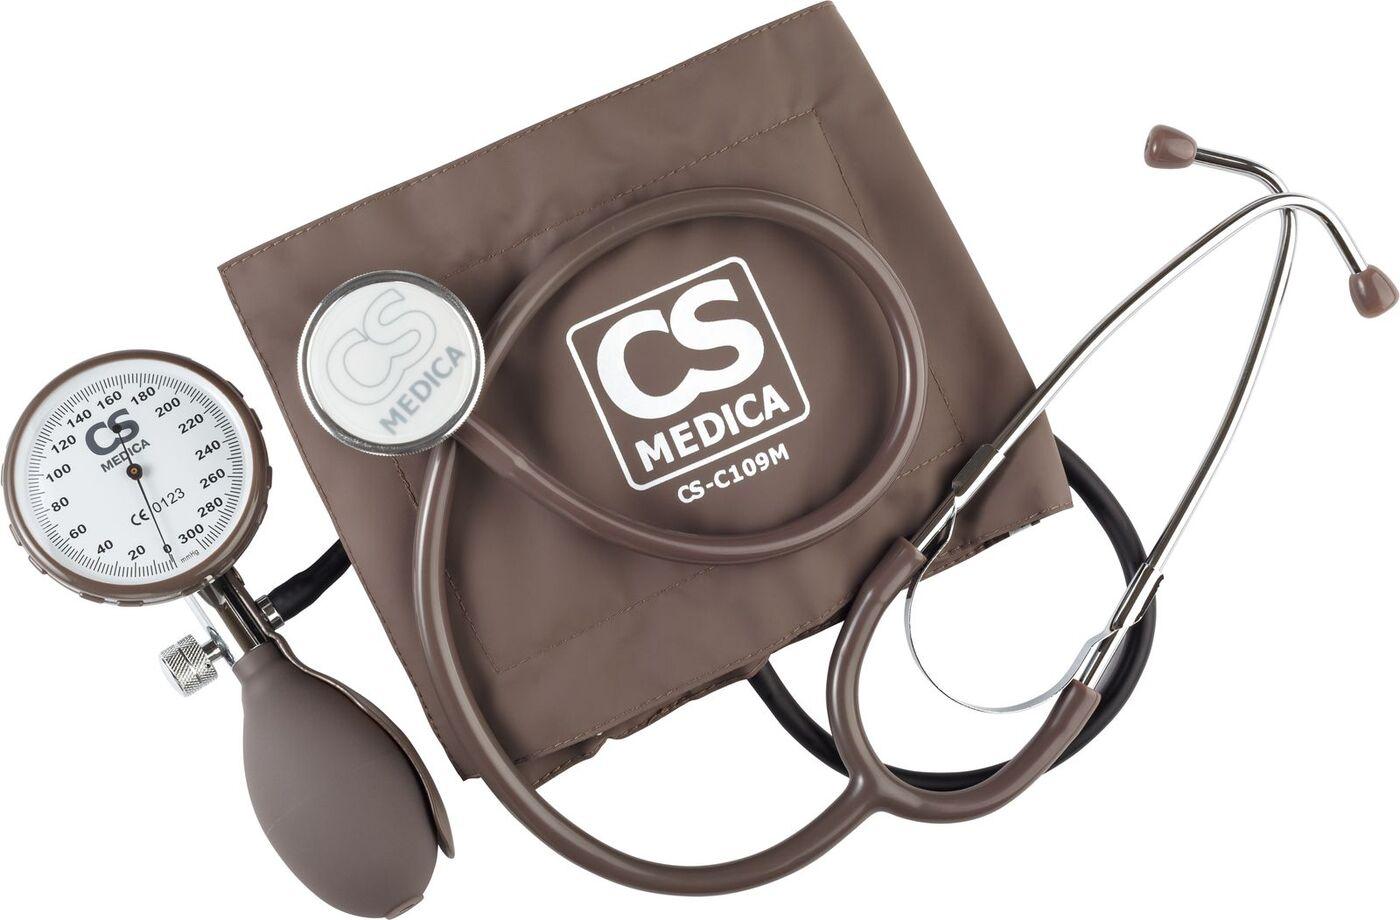 Тонометр механический CS Medica CS-109-Pro в комплекте с фонендоскопом, увеличенным манометром и 3 манжетами без фиксирующего кольца, для окружности плеча 17 - 24 см, 22 - 38 см и 34 - 50 см